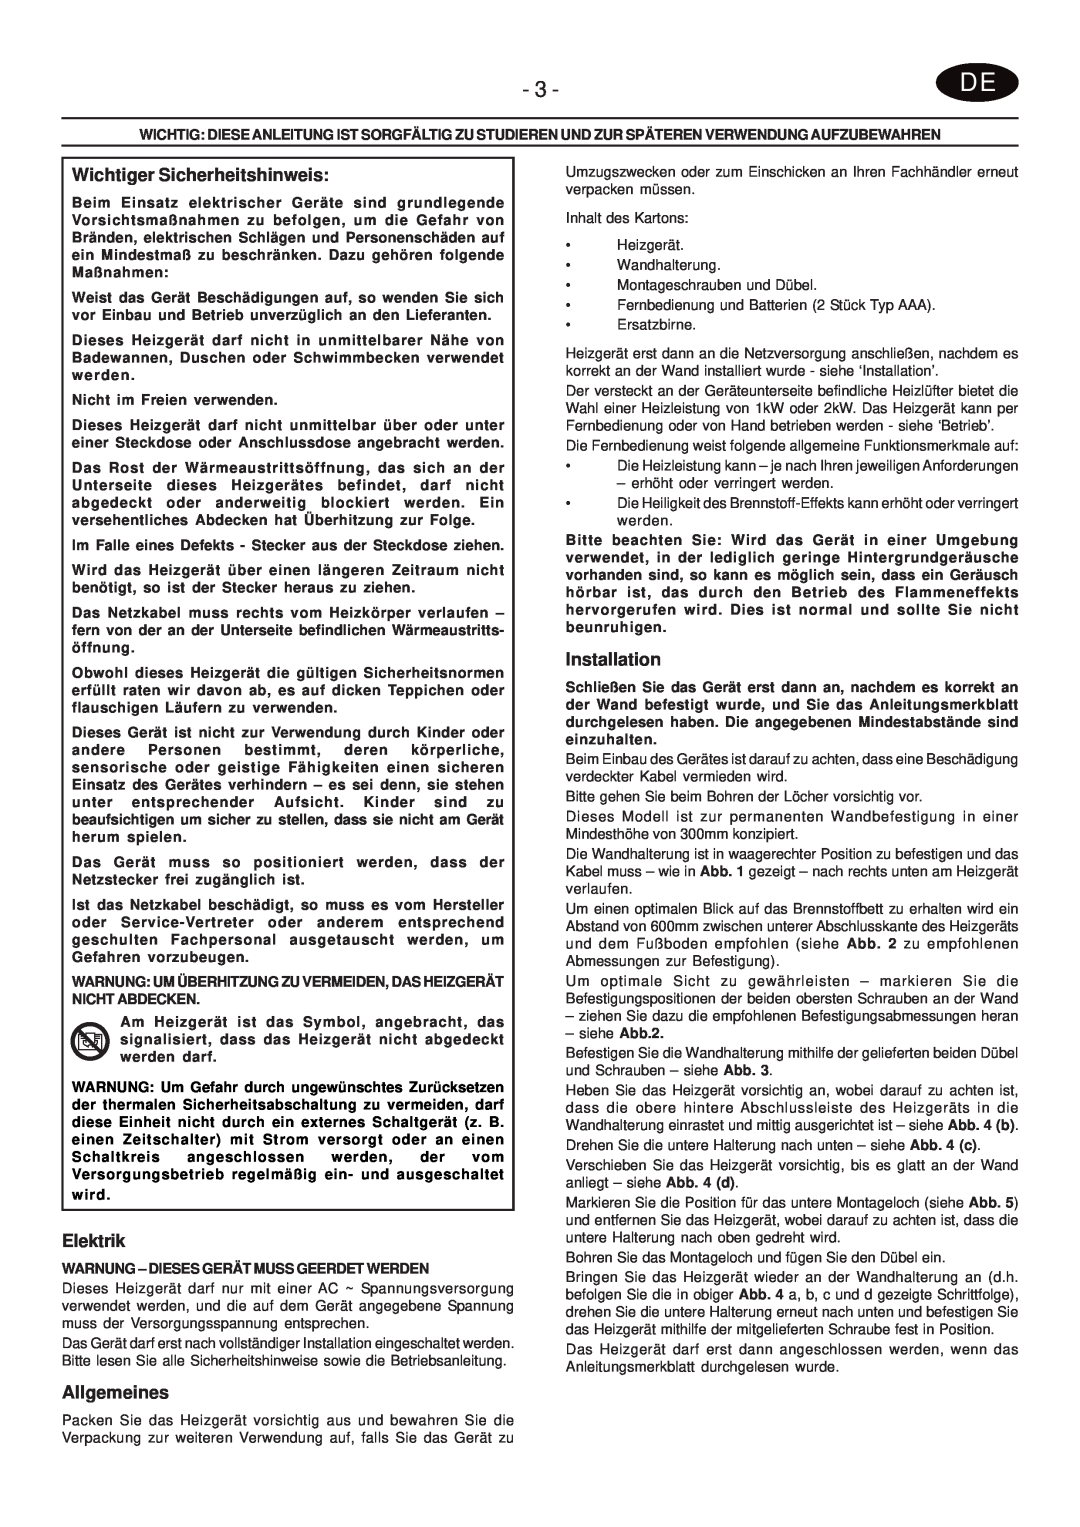 Faber PRS20 manual Wichtiger Sicherheitshinweis, Elektrik, Allgemeines, Installation, wird 